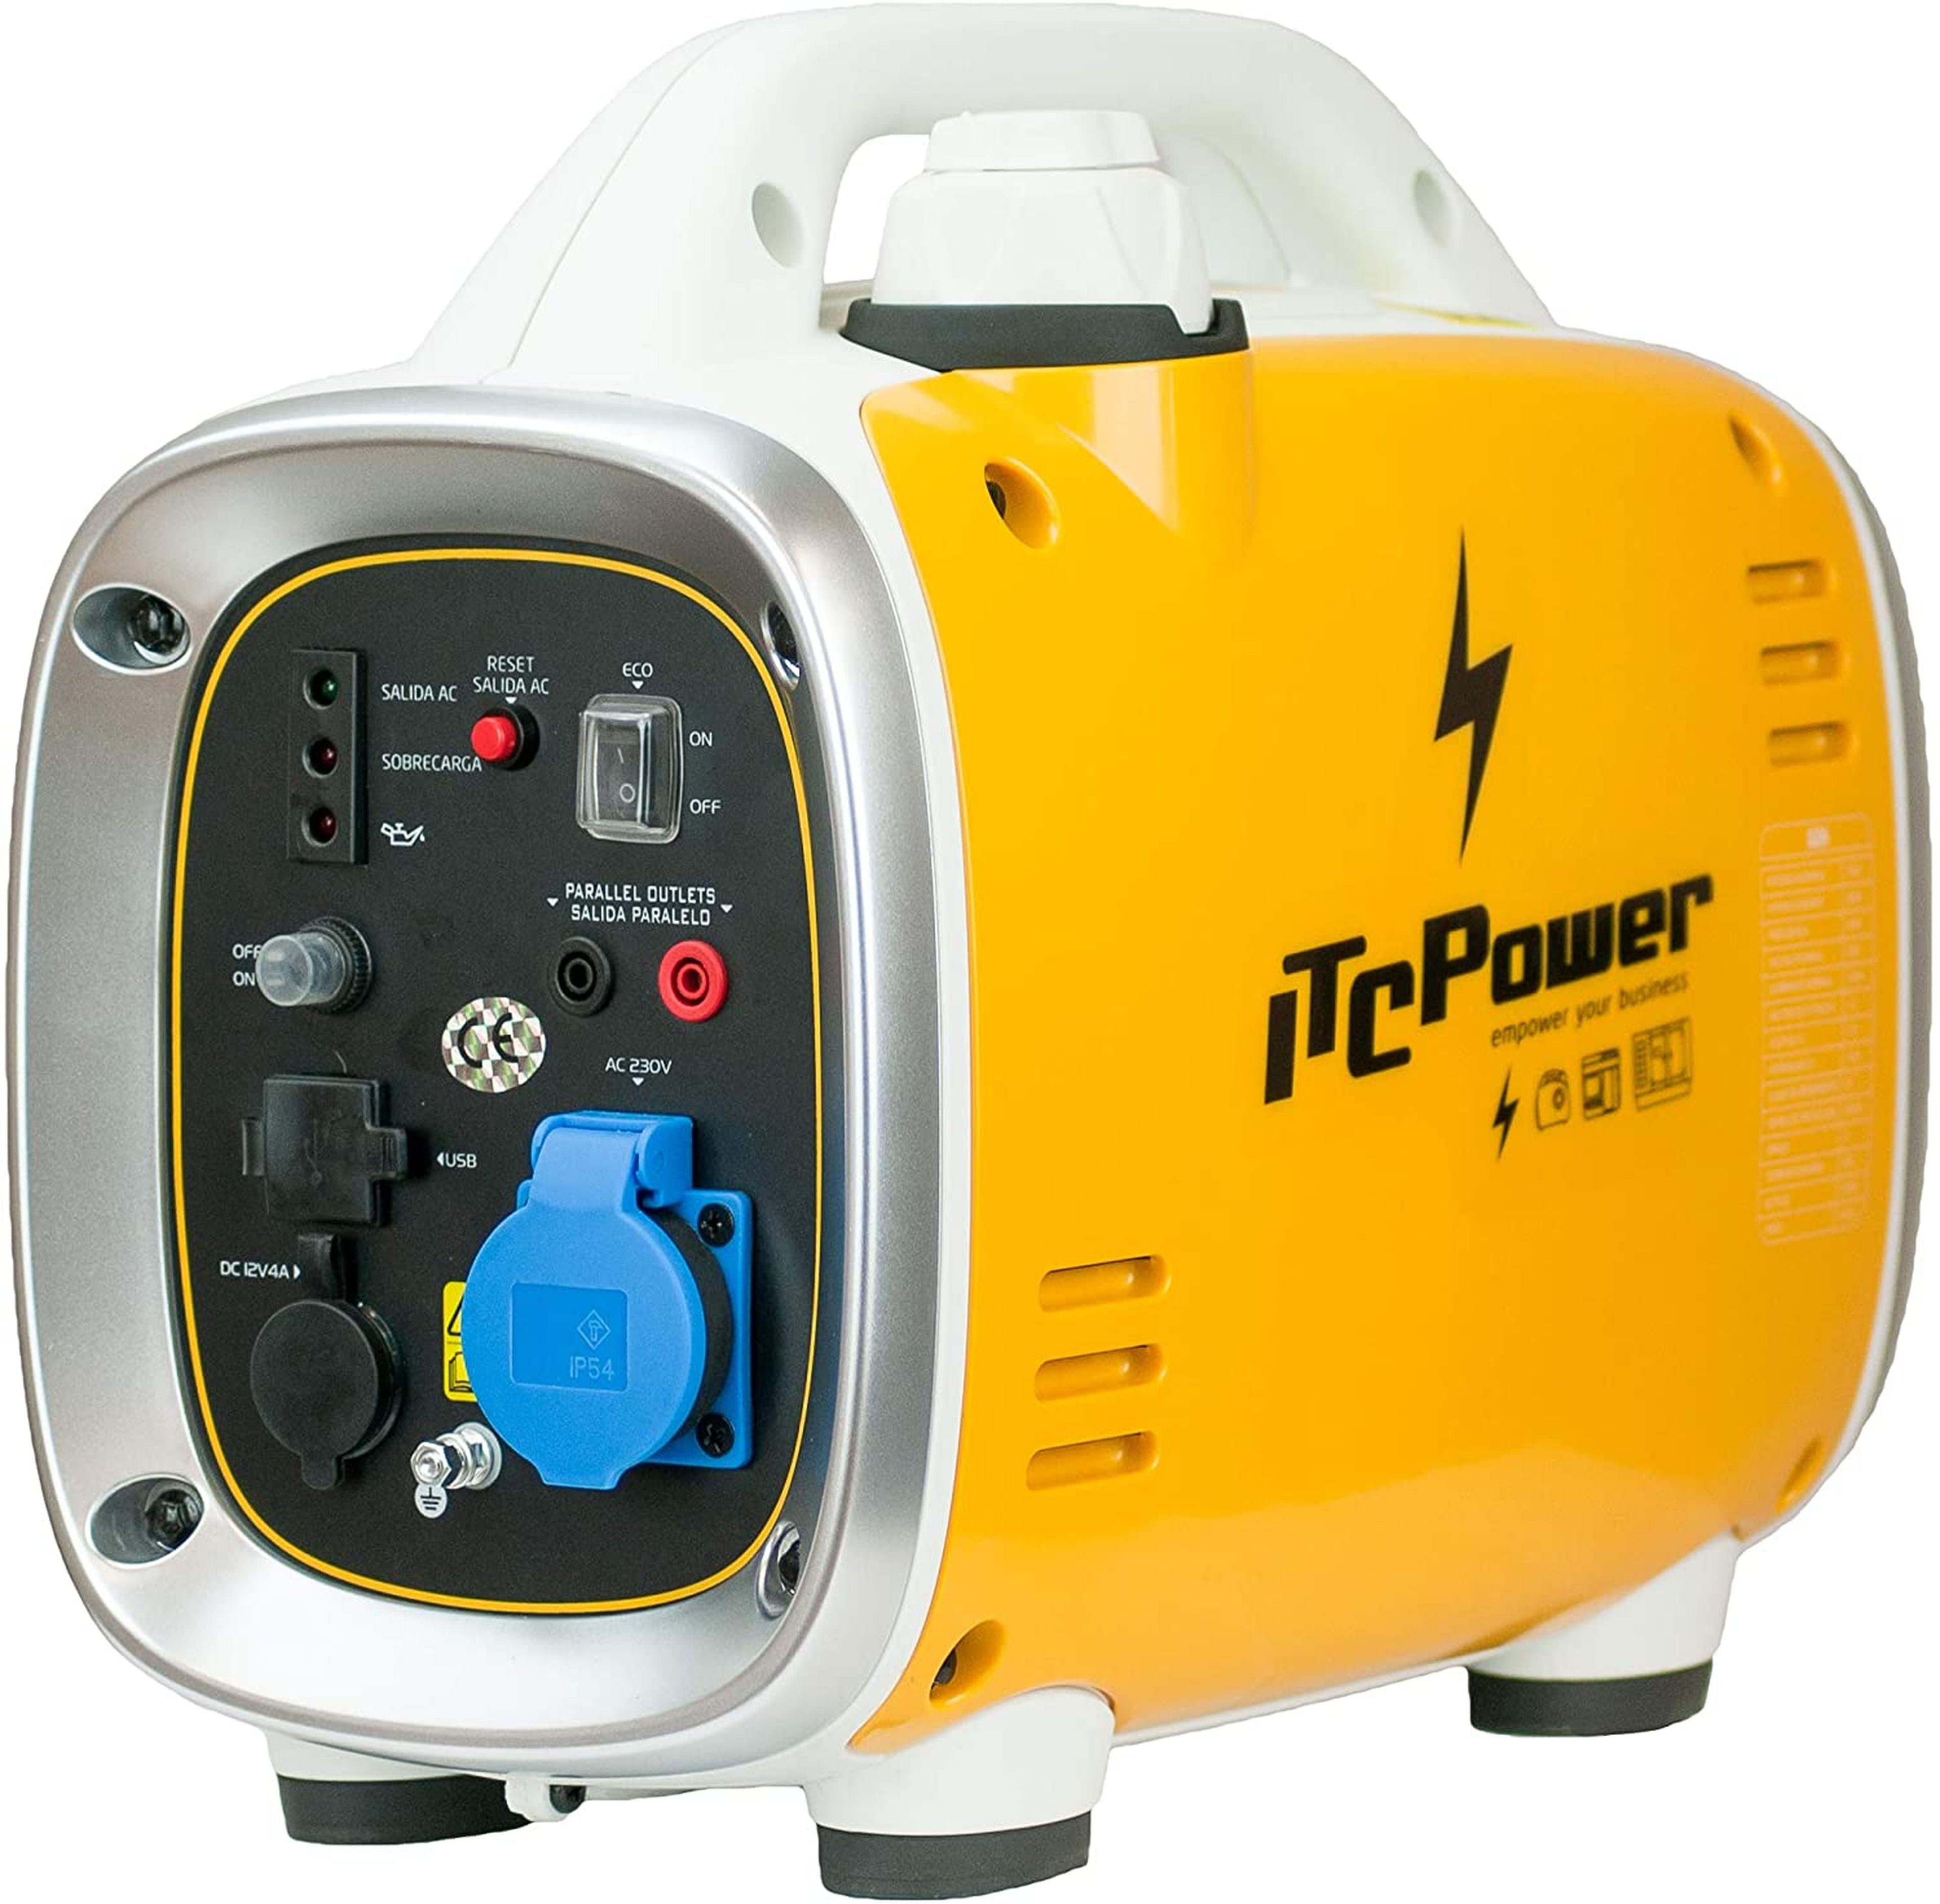 generador ITC Power